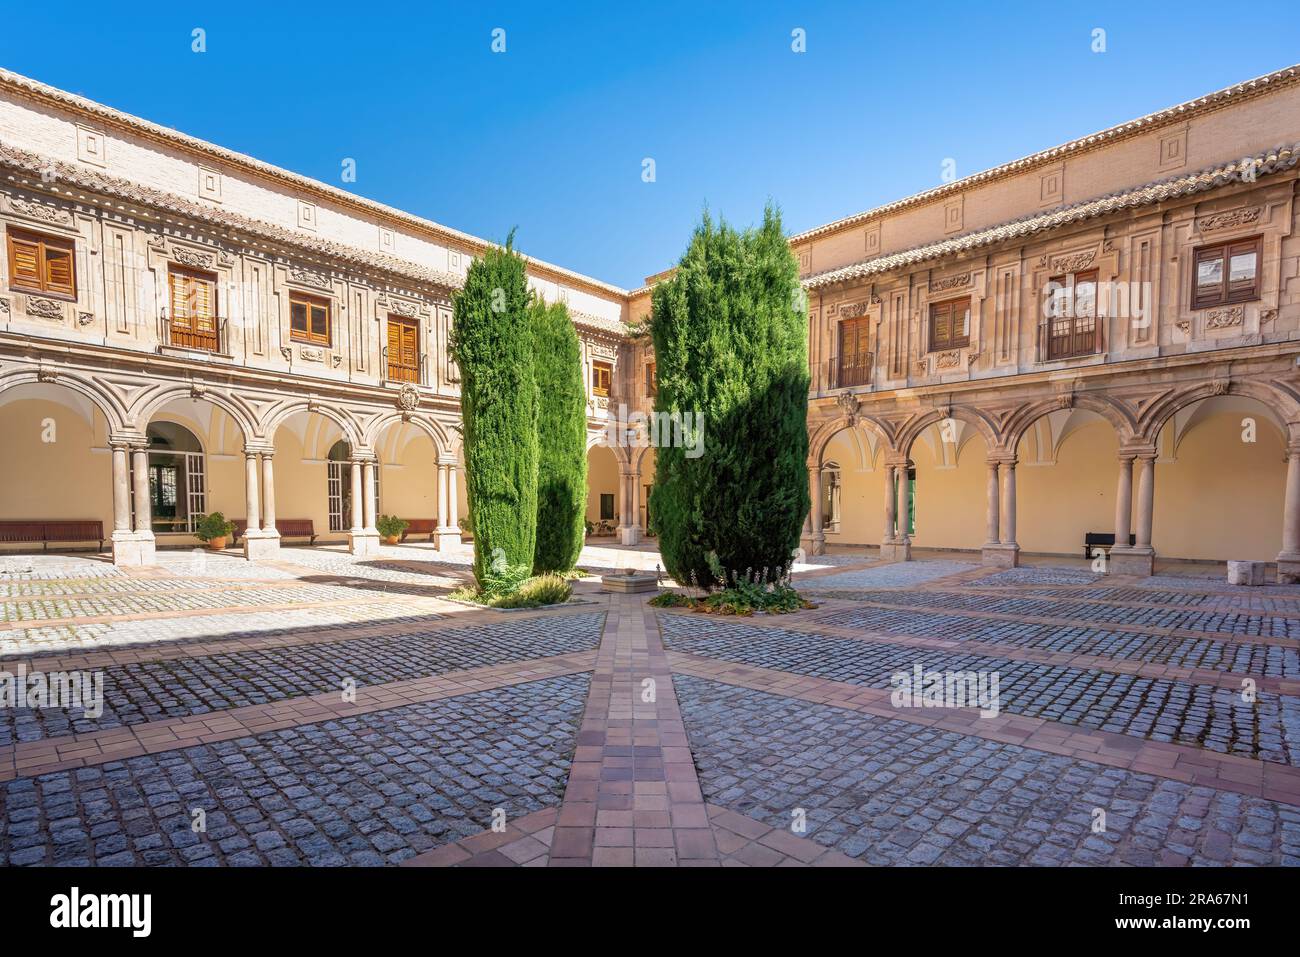 Monastero reale di Santo Domingo Chiostri - Jaen, Spagna Foto Stock